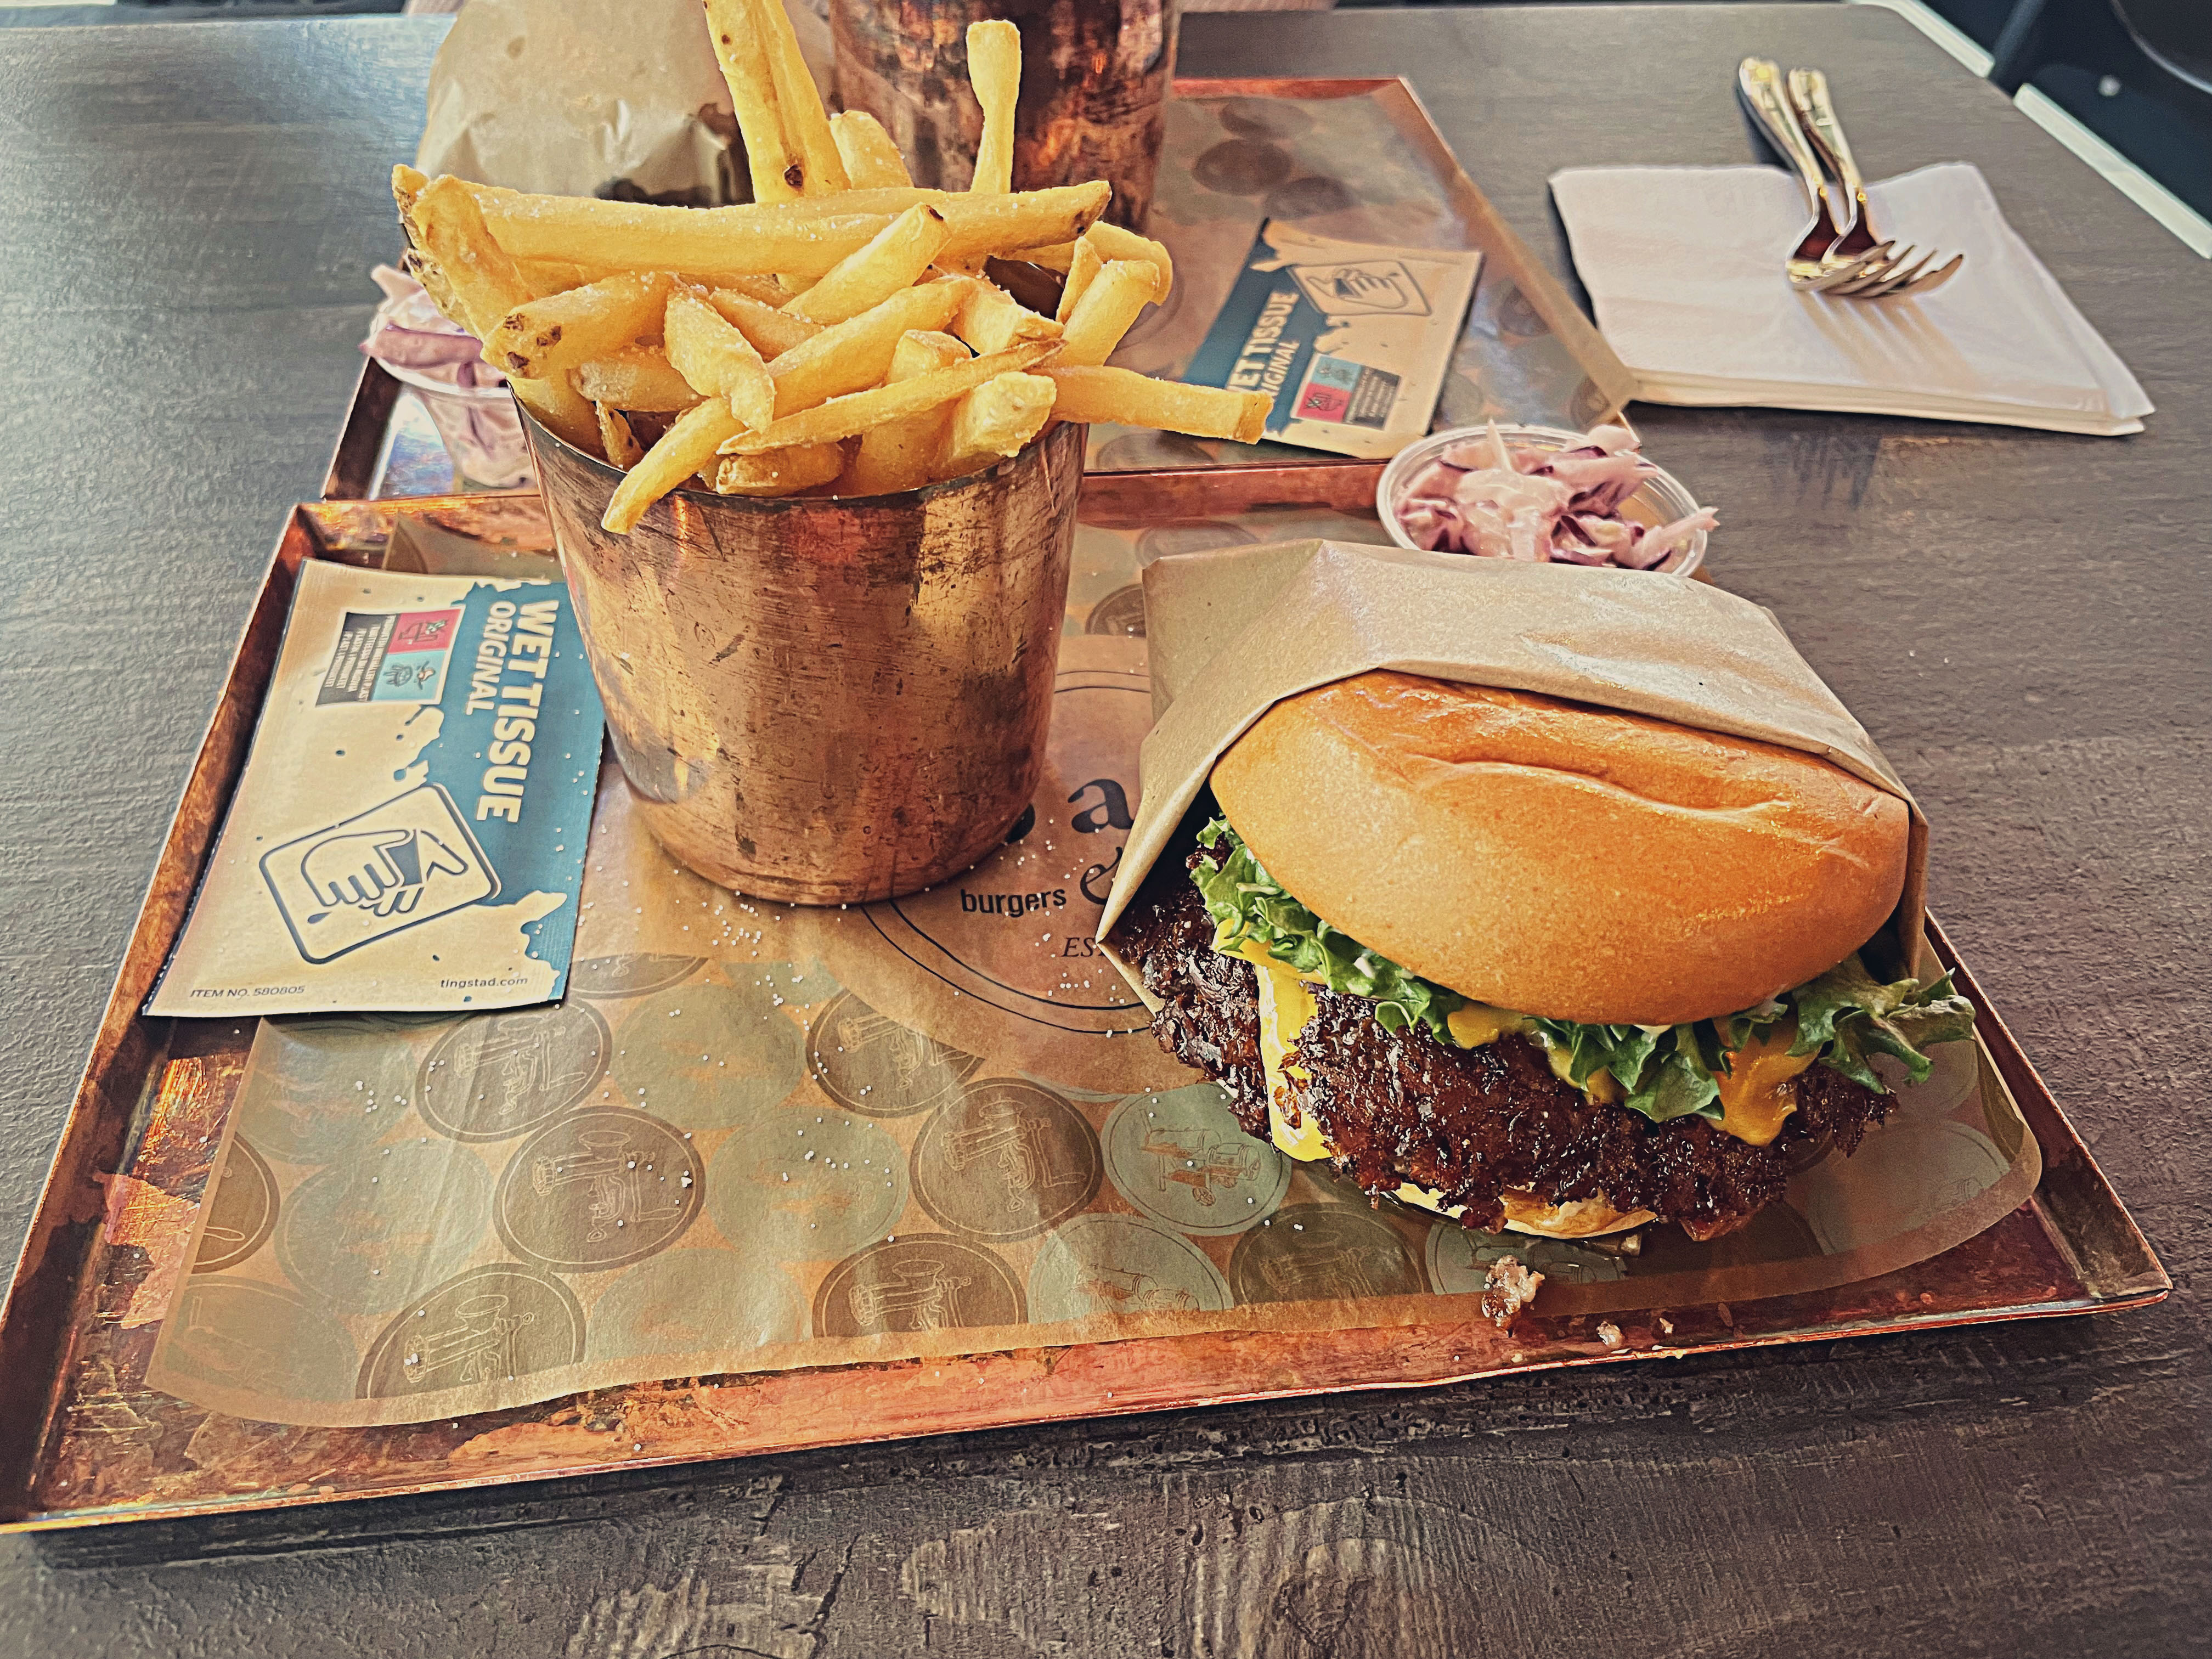 bap – burgers & pastrami